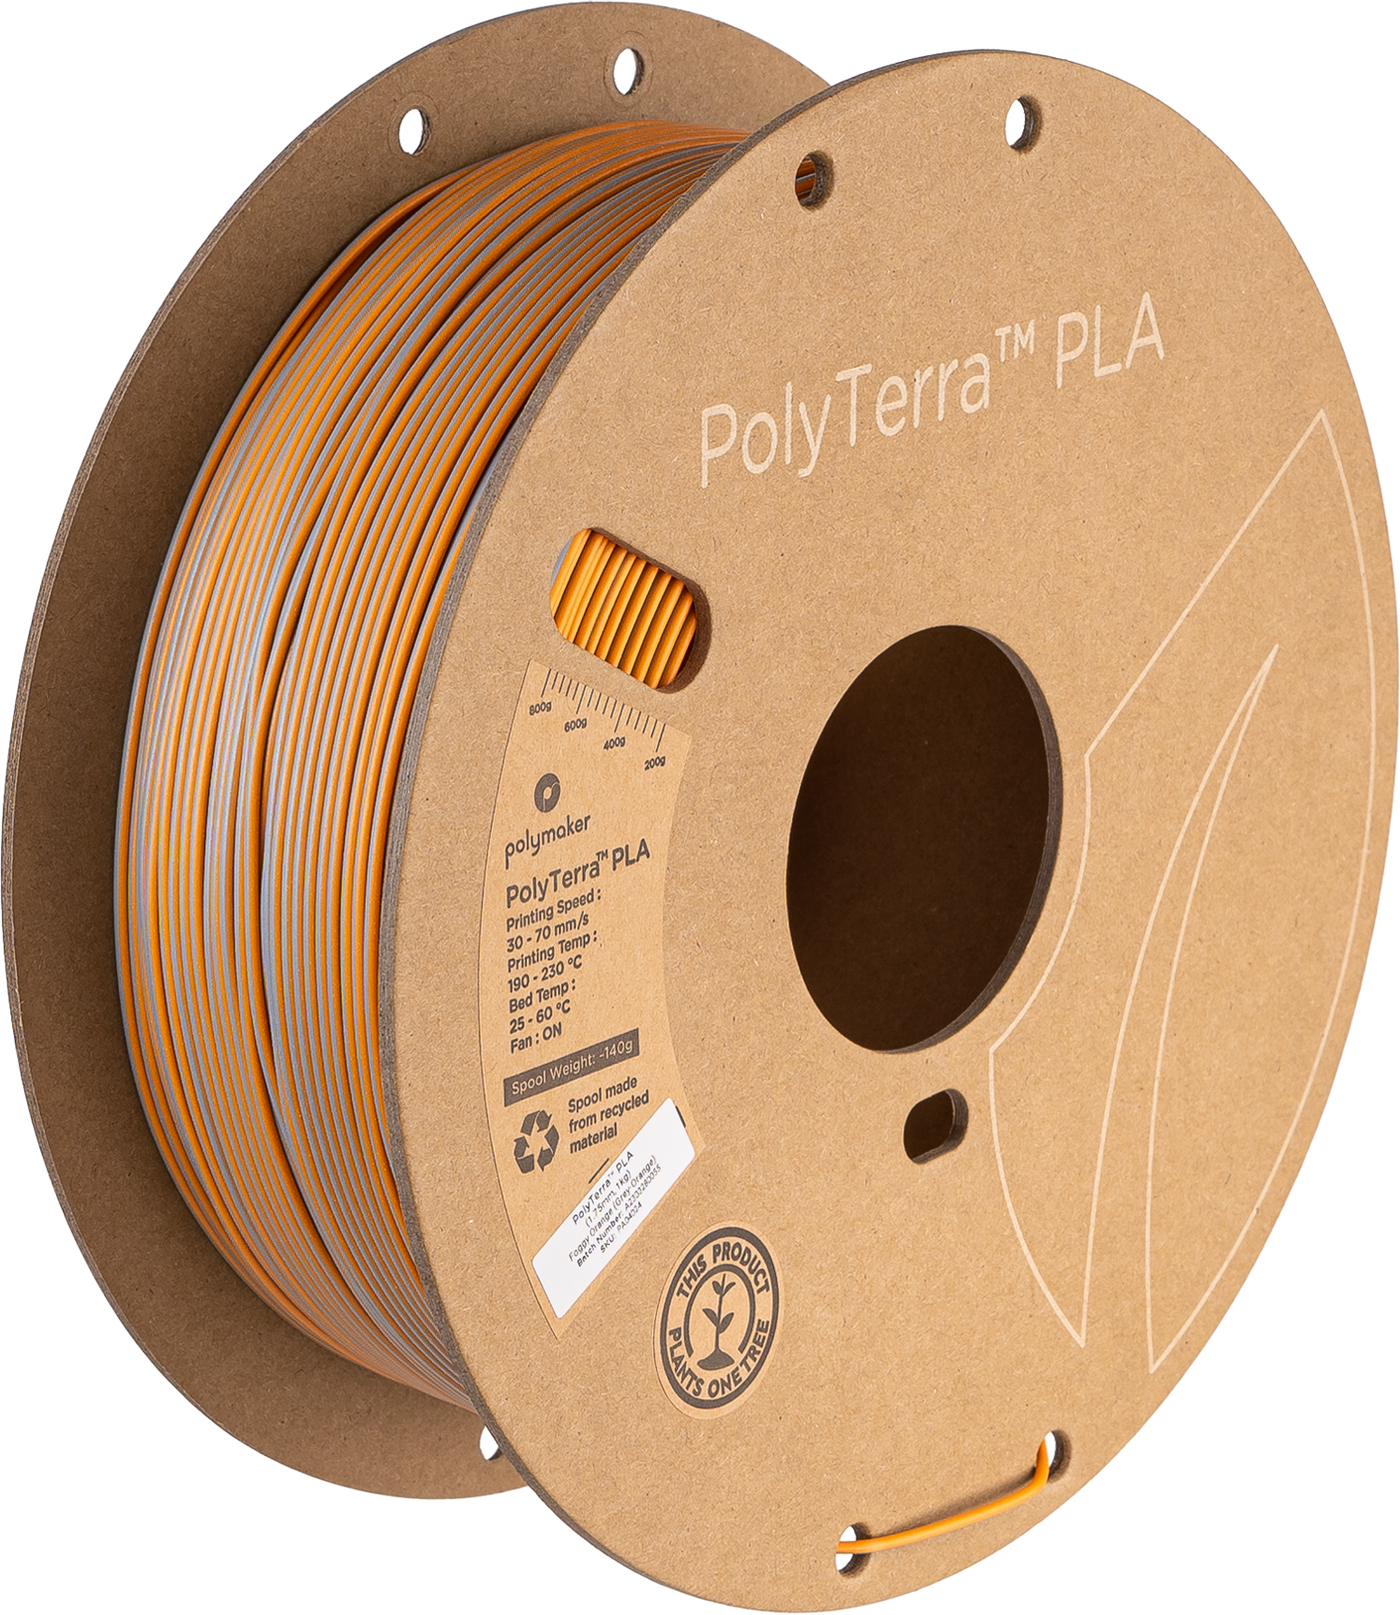 Polymaker PolyTerra PLA Filament Dual Foggy Orange (Grey-Orange) 1.75 mm 1KG